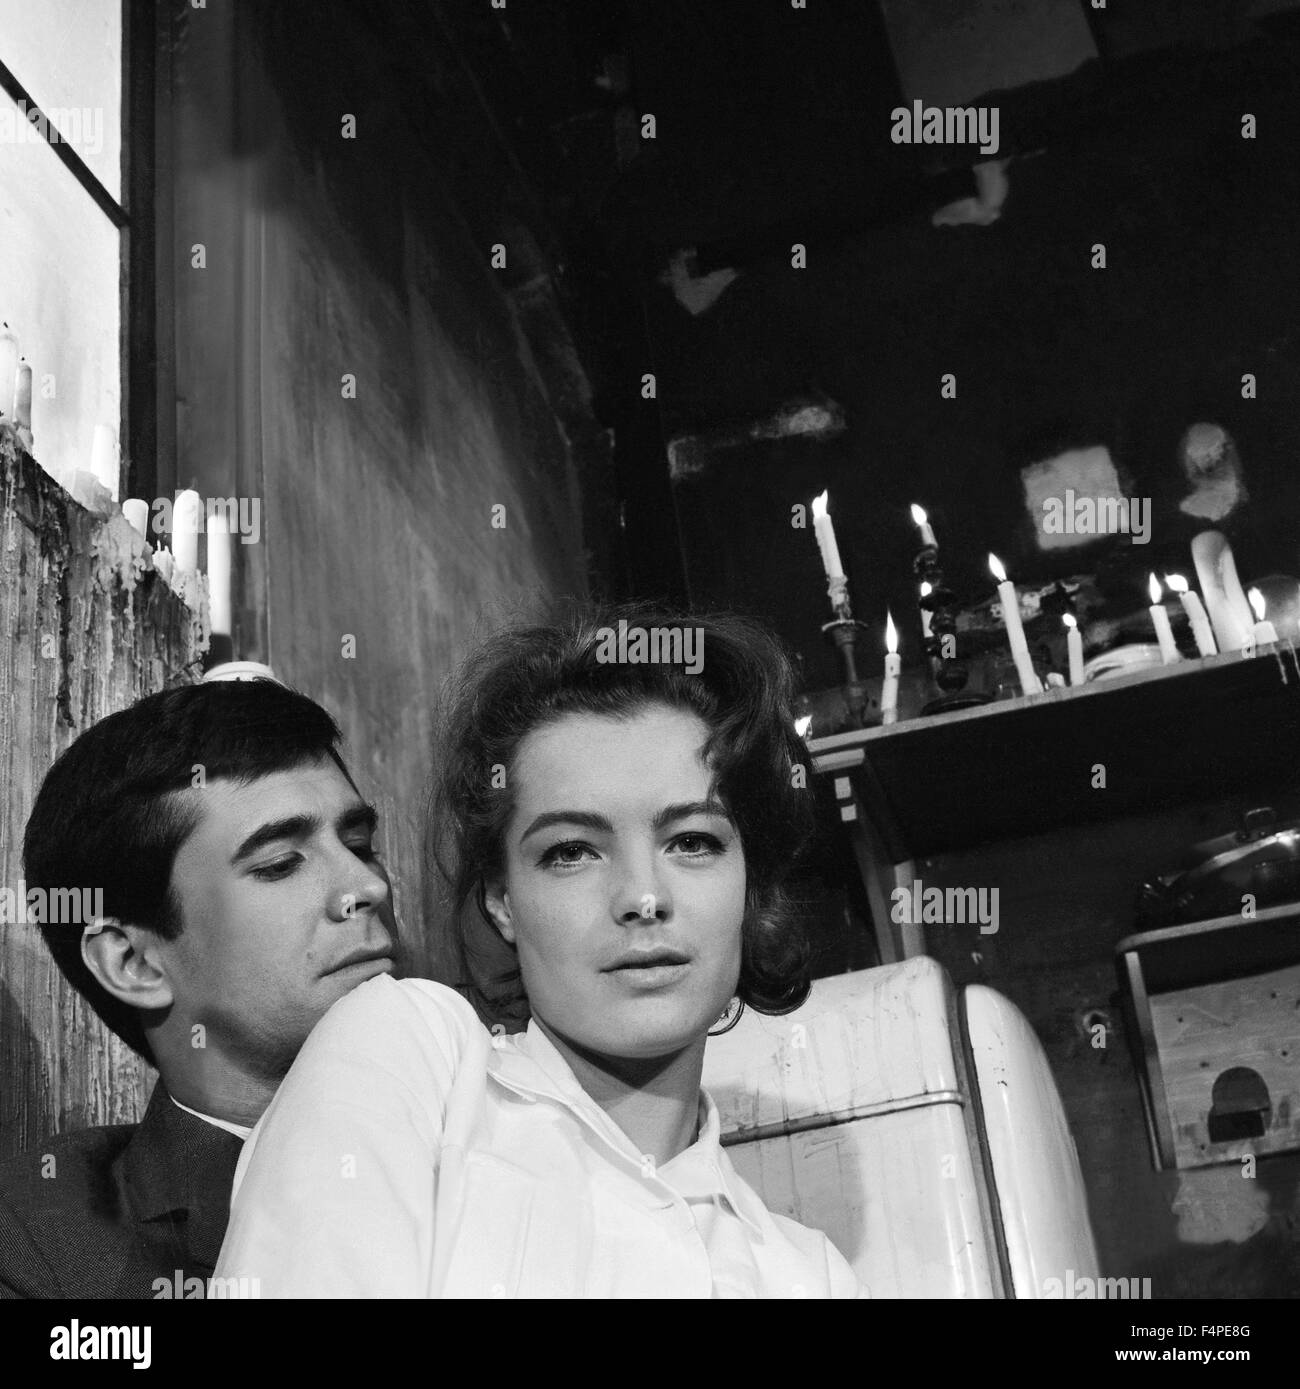 Anthony Perkins y Romy Schneider / El Juicio / 1962 dirigida por Orson Welles Foto de stock